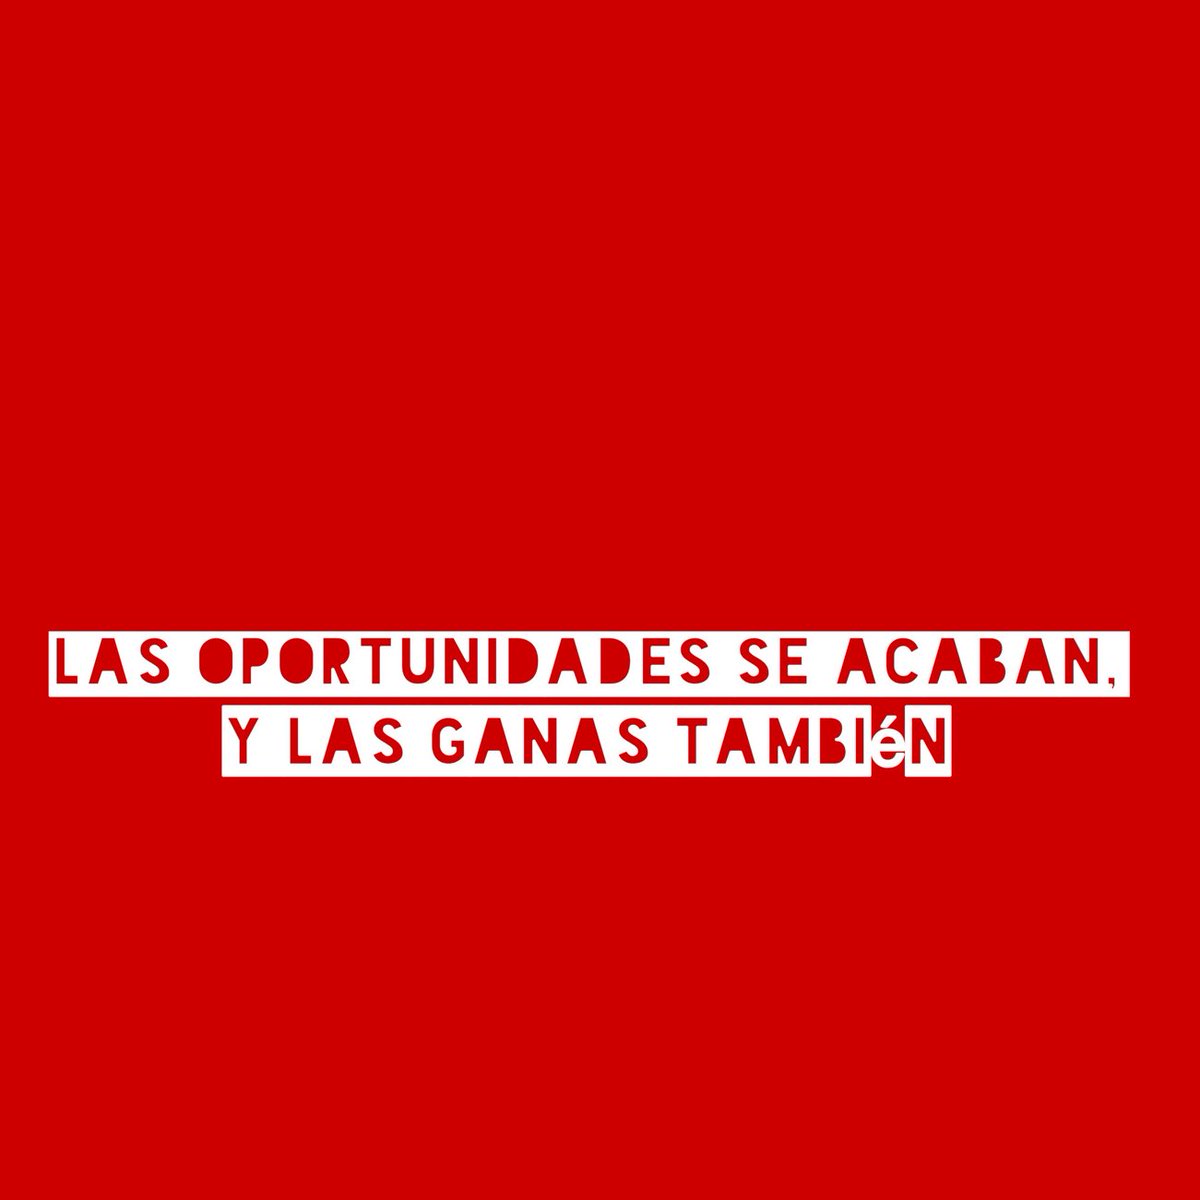 Las oportunidades se acaban,
y las ganas también
.
.
.
#cambiospositivos #decisiones #oportunidades #hecheleganas #sabiduria #loquepasopaso #yaparaqué